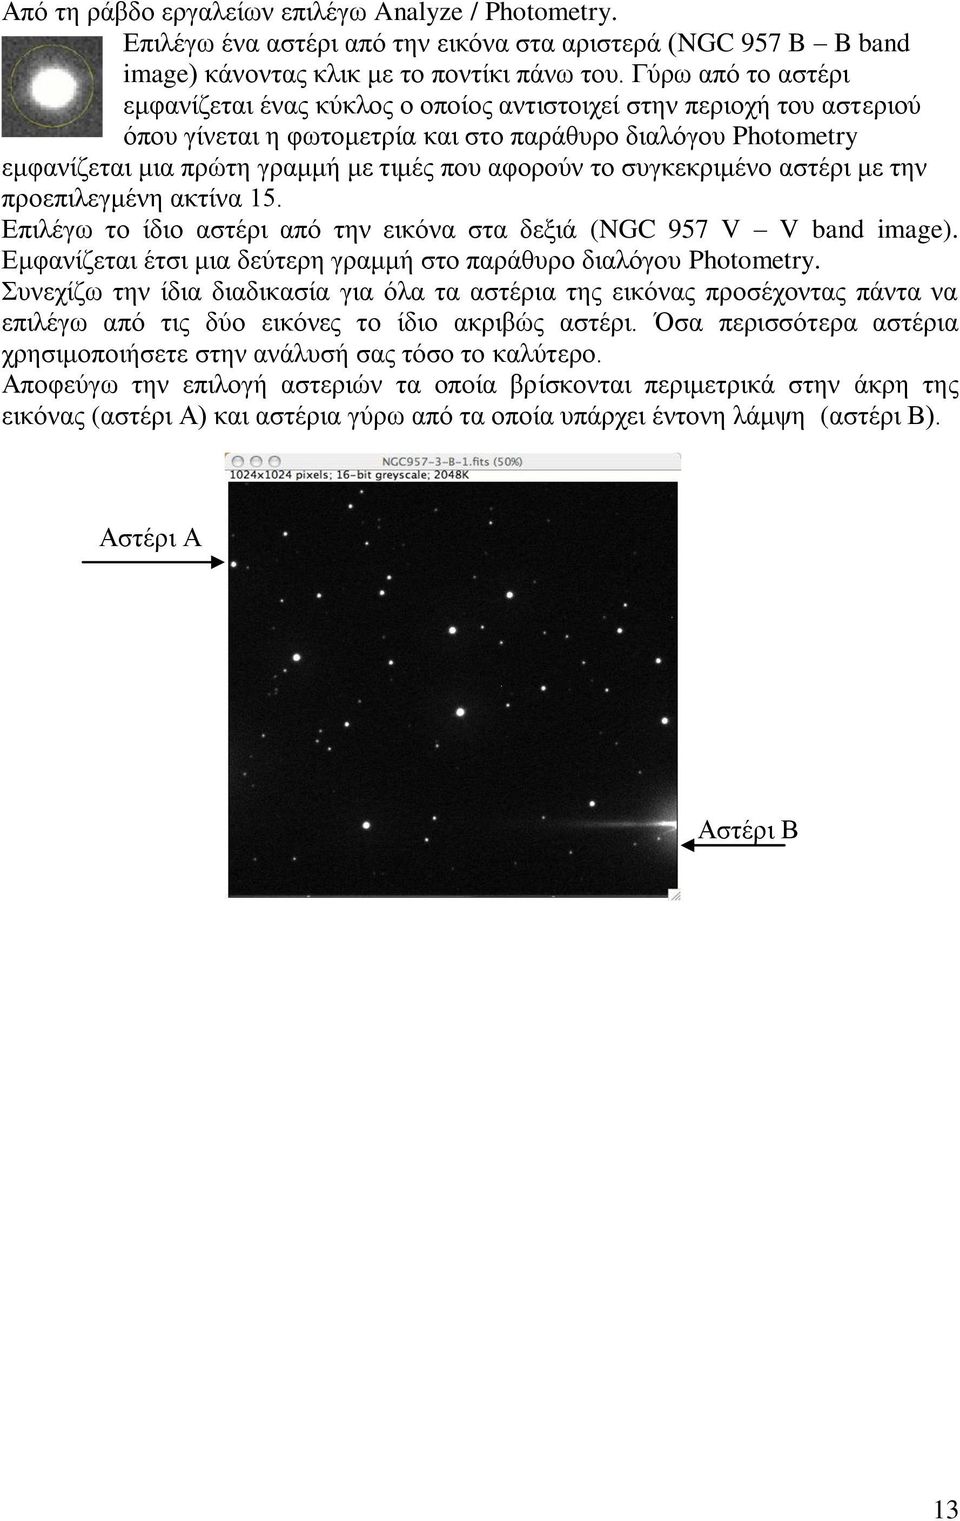 αφορούν το συγκεκριμένο αστέρι με την προεπιλεγμένη ακτίνα 15. Επιλέγω το ίδιο αστέρι από την εικόνα στα δεξιά (NGC 957 V V band image).